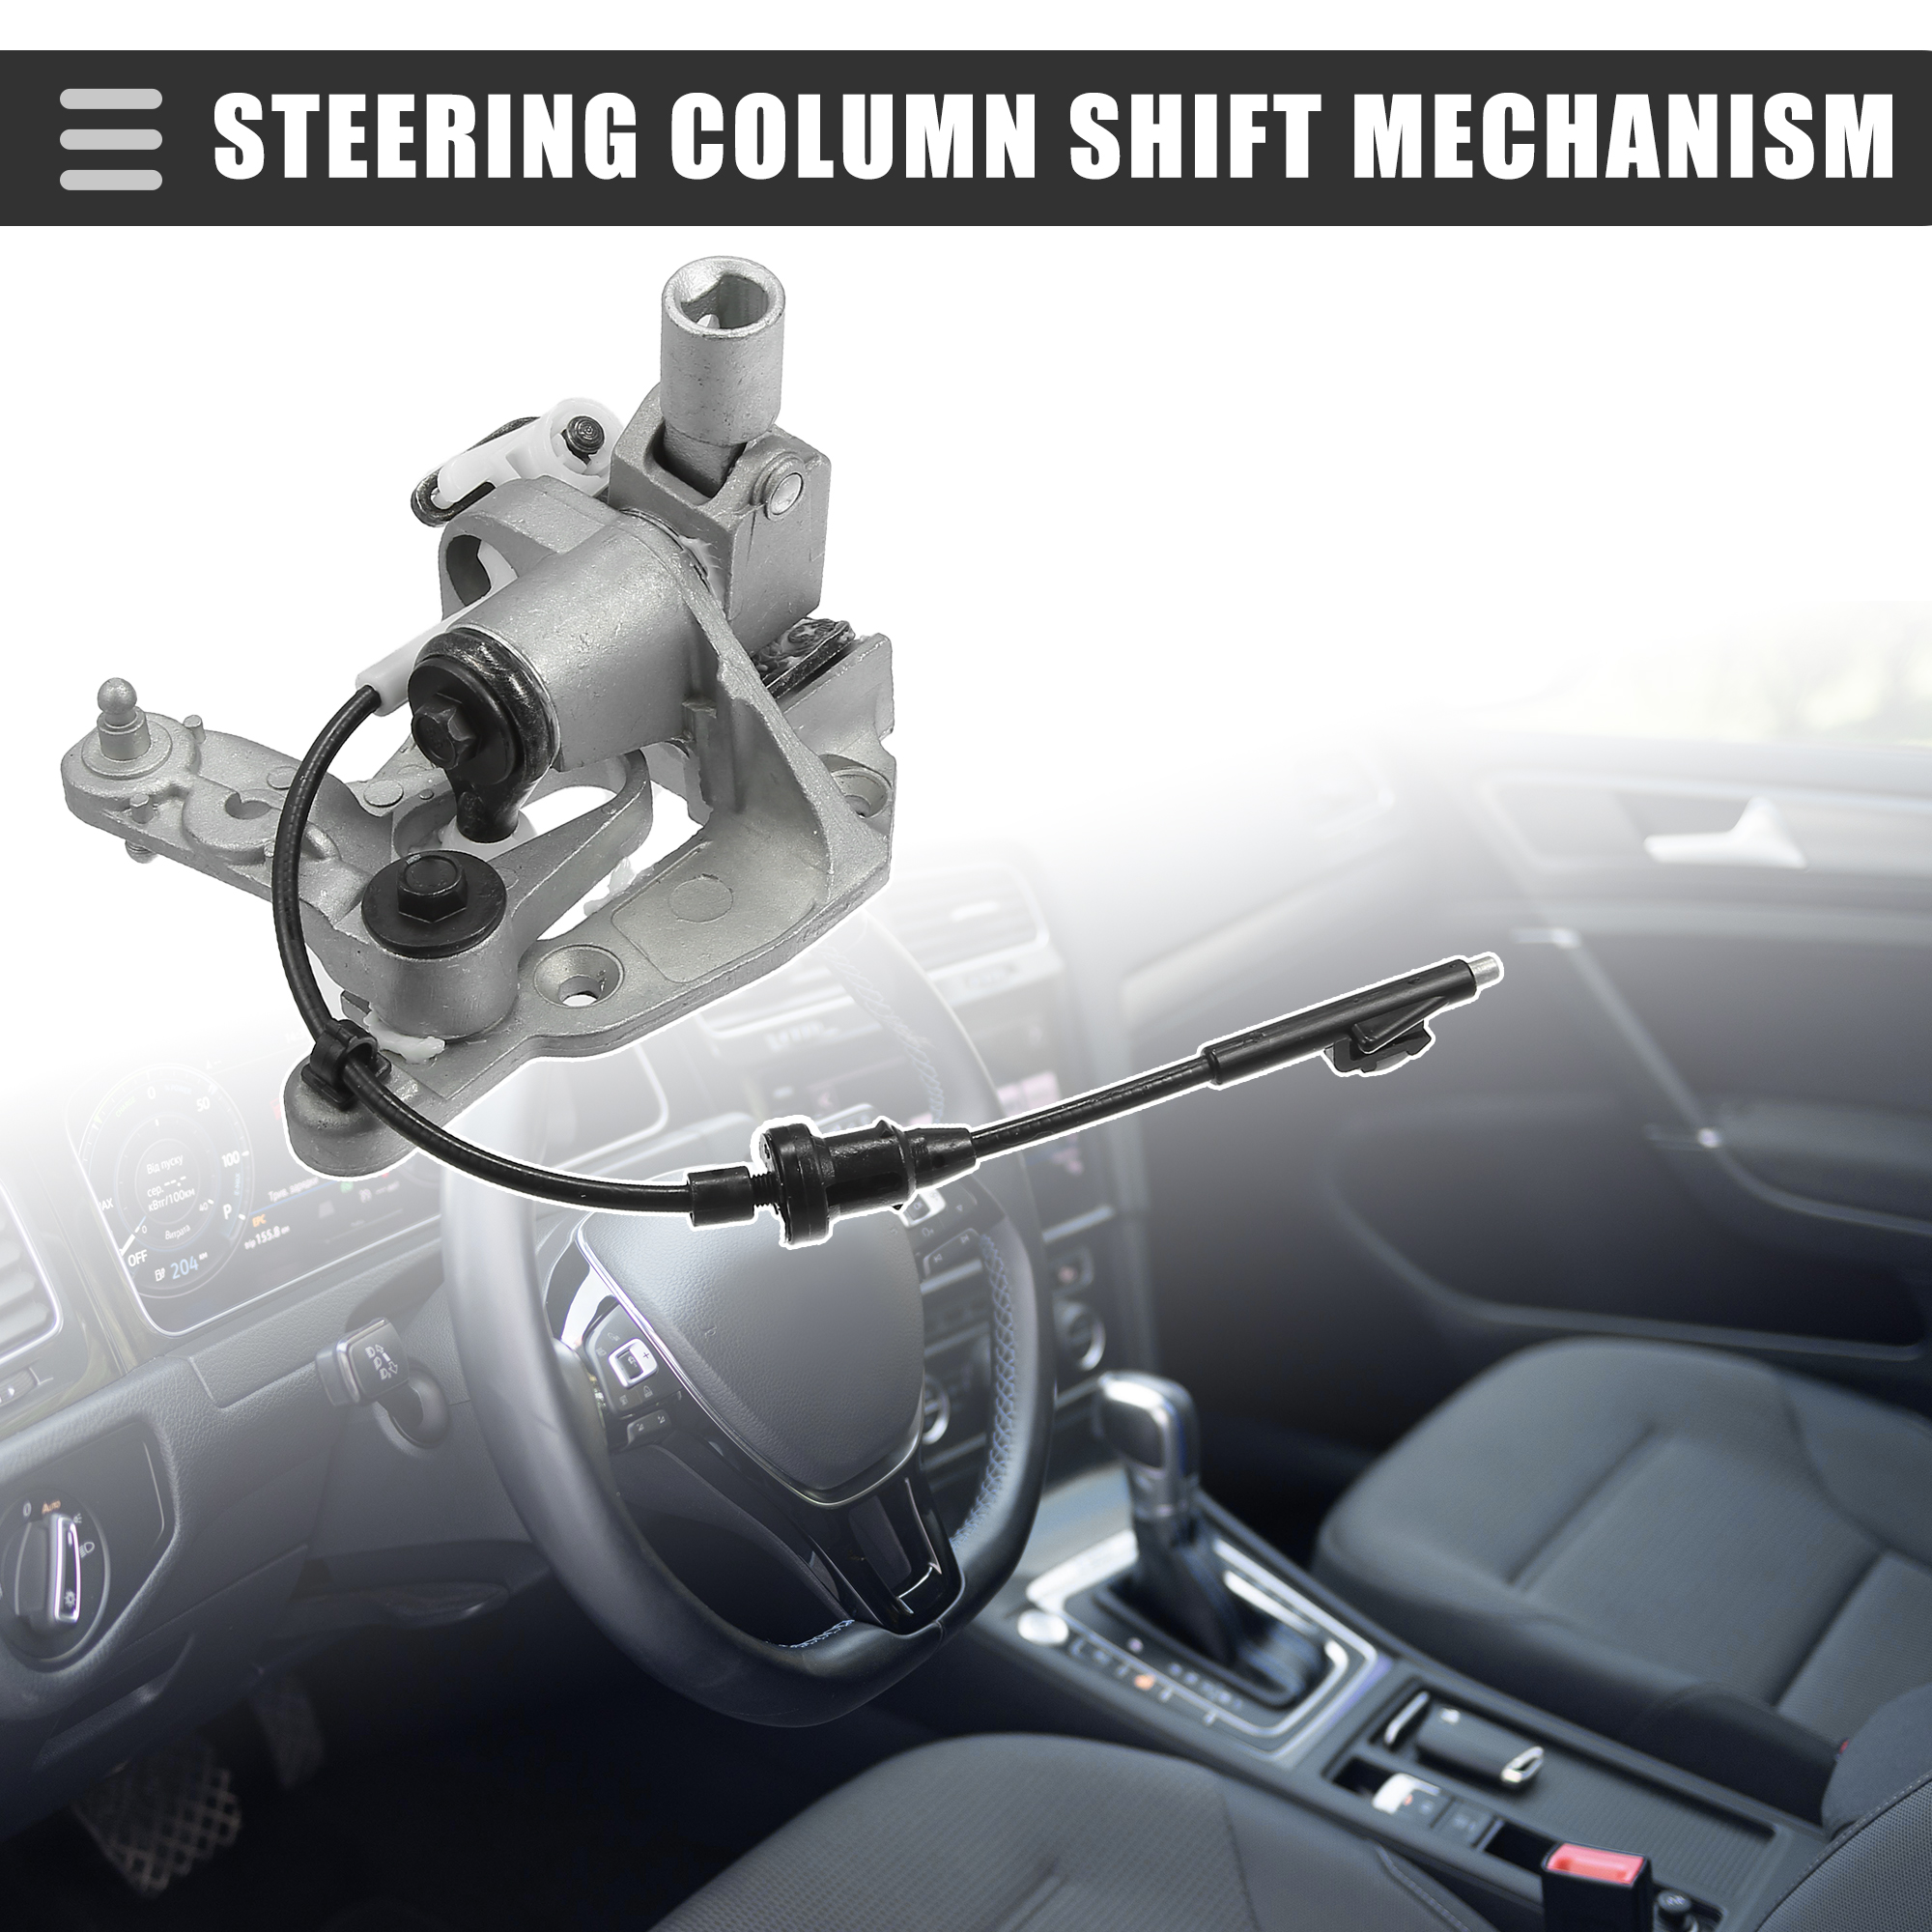 Unique Bargains 1pcs Car Steering Column Shift Mechanism for Chevrolet C2500 2000 No.26047559